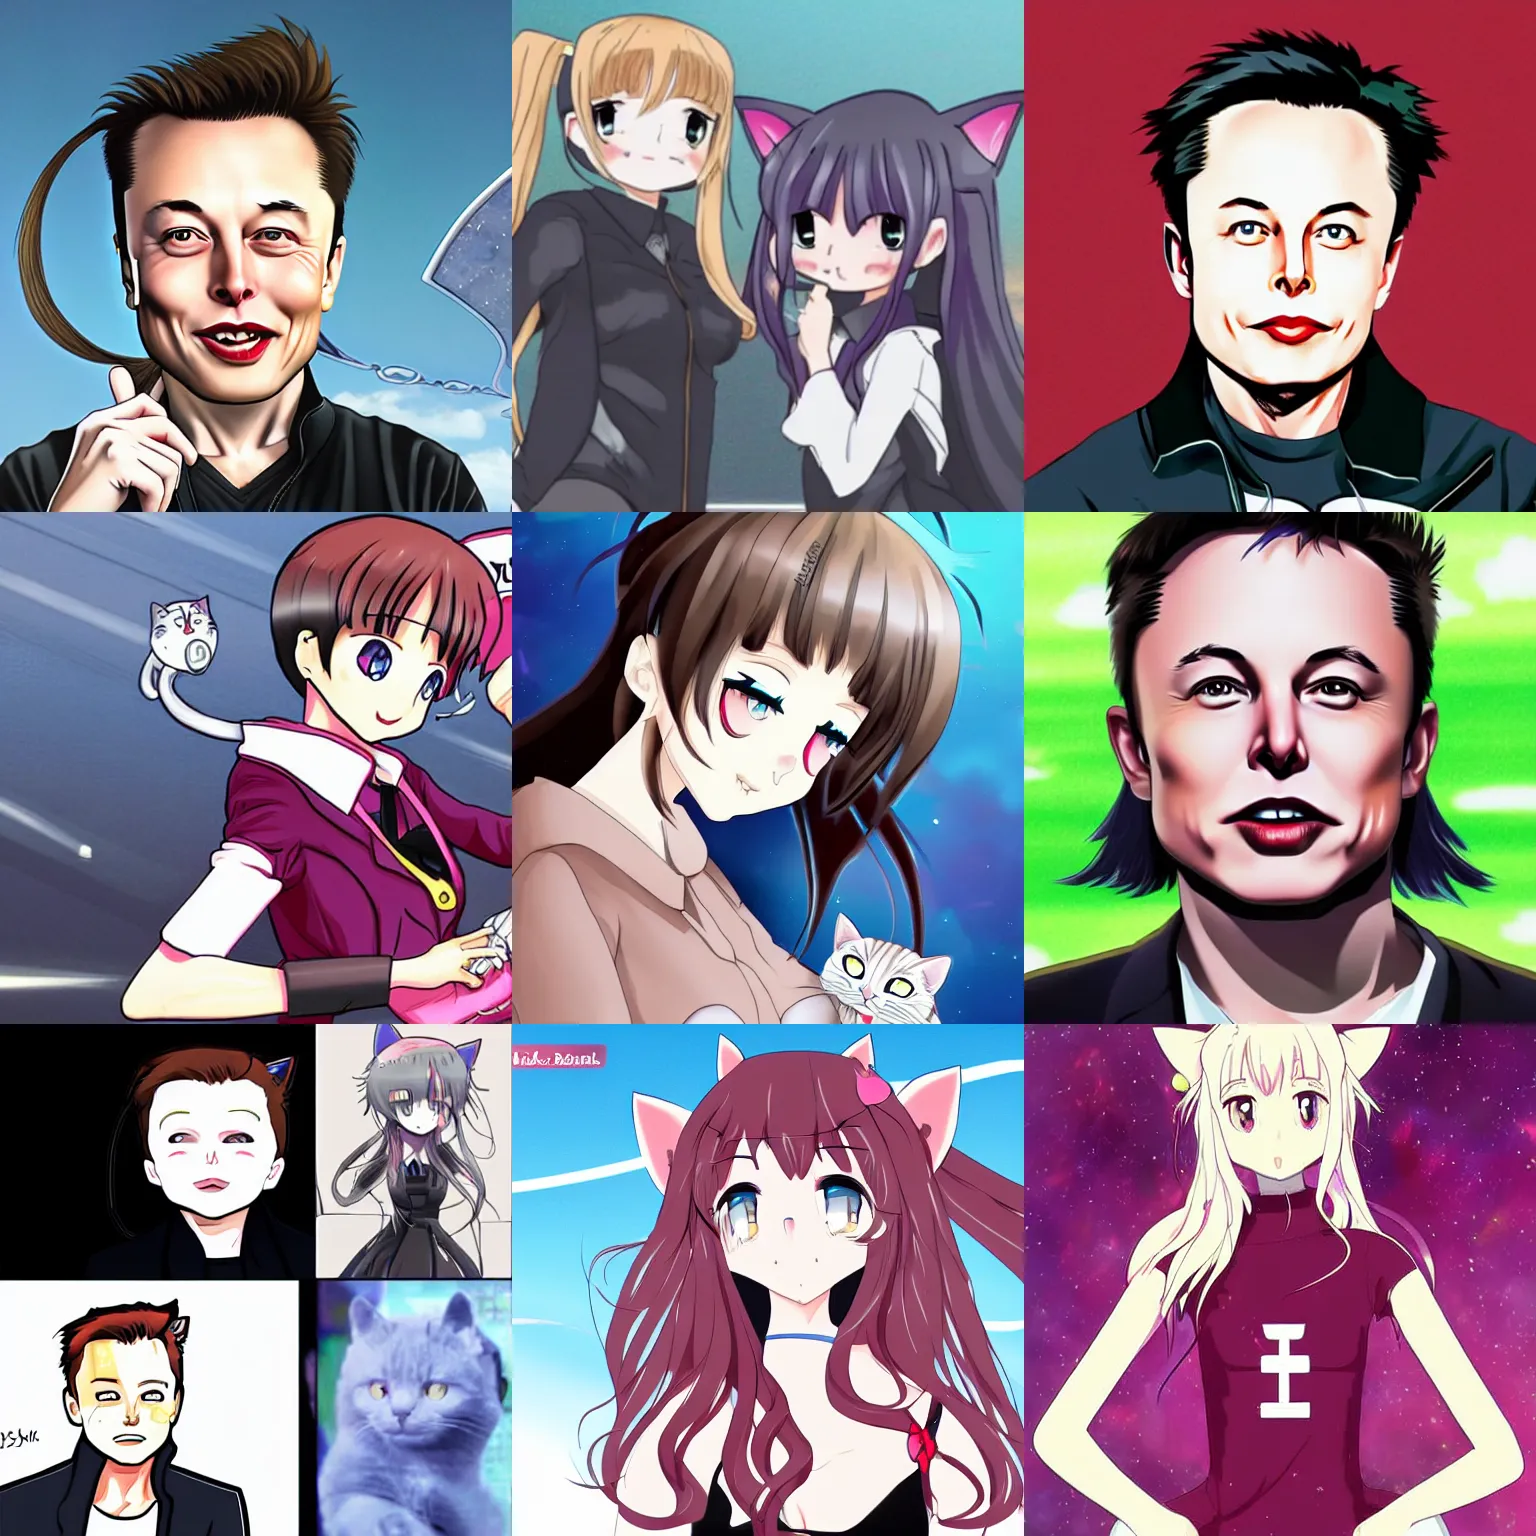 Elon Musk Promised us Cat Girls! 